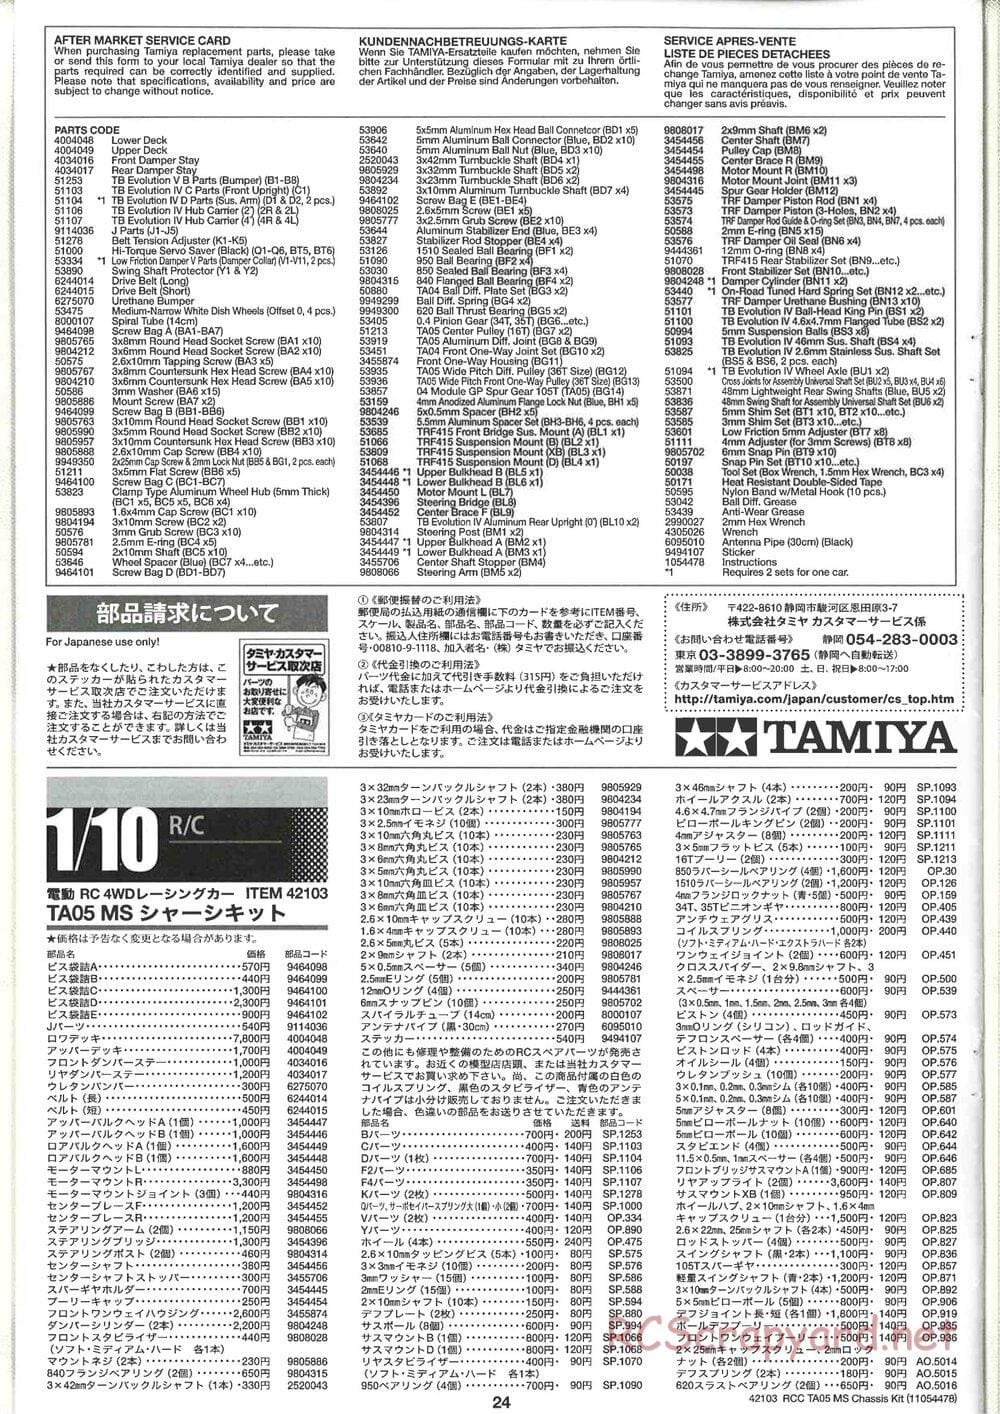 Tamiya - TA05 MS Chassis - Manual - Page 24